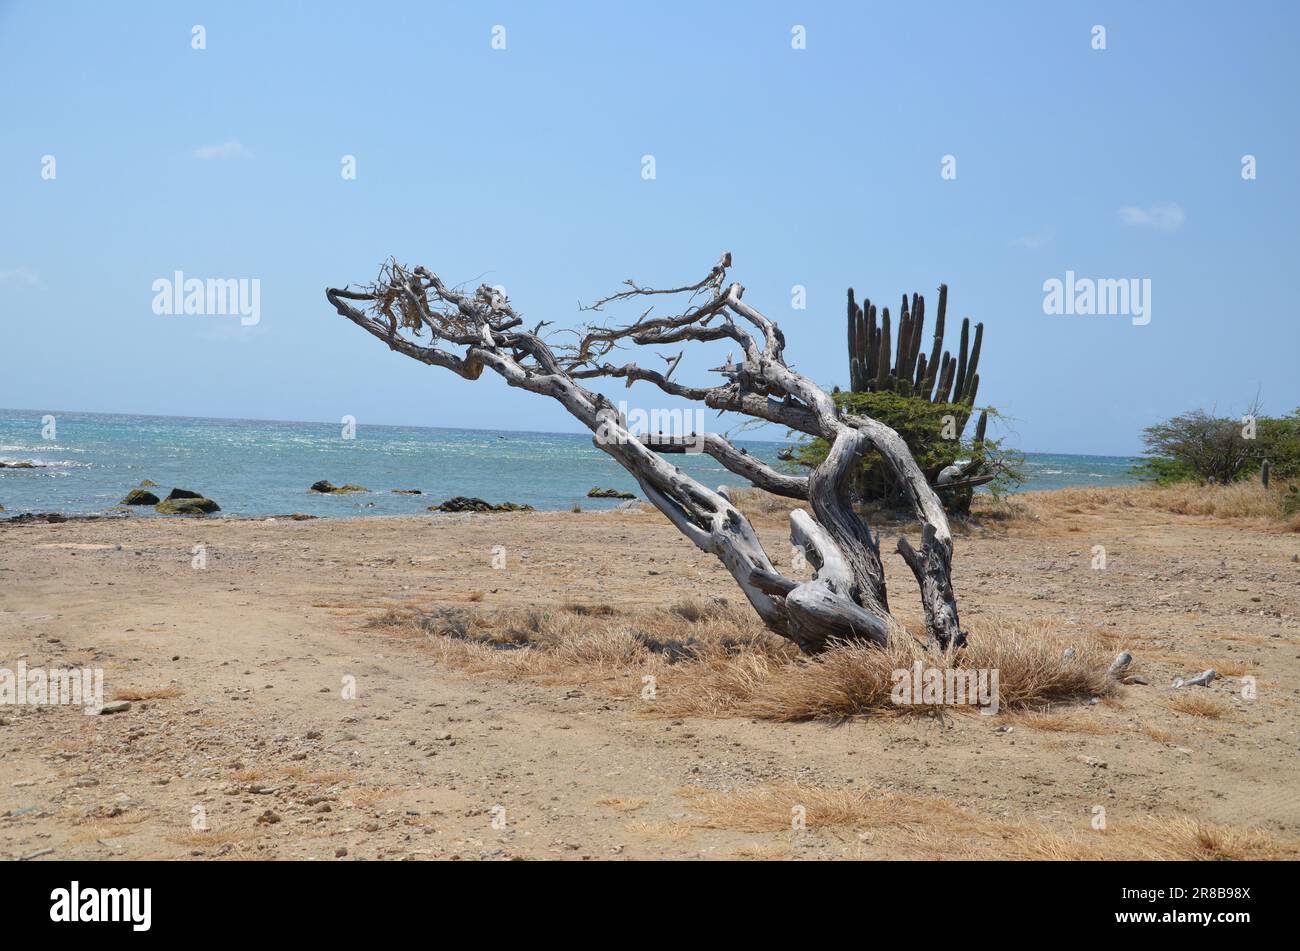 Plage de sable avec arbre sec et plante de cactus à la mer des caraïbes d'Aruba Banque D'Images